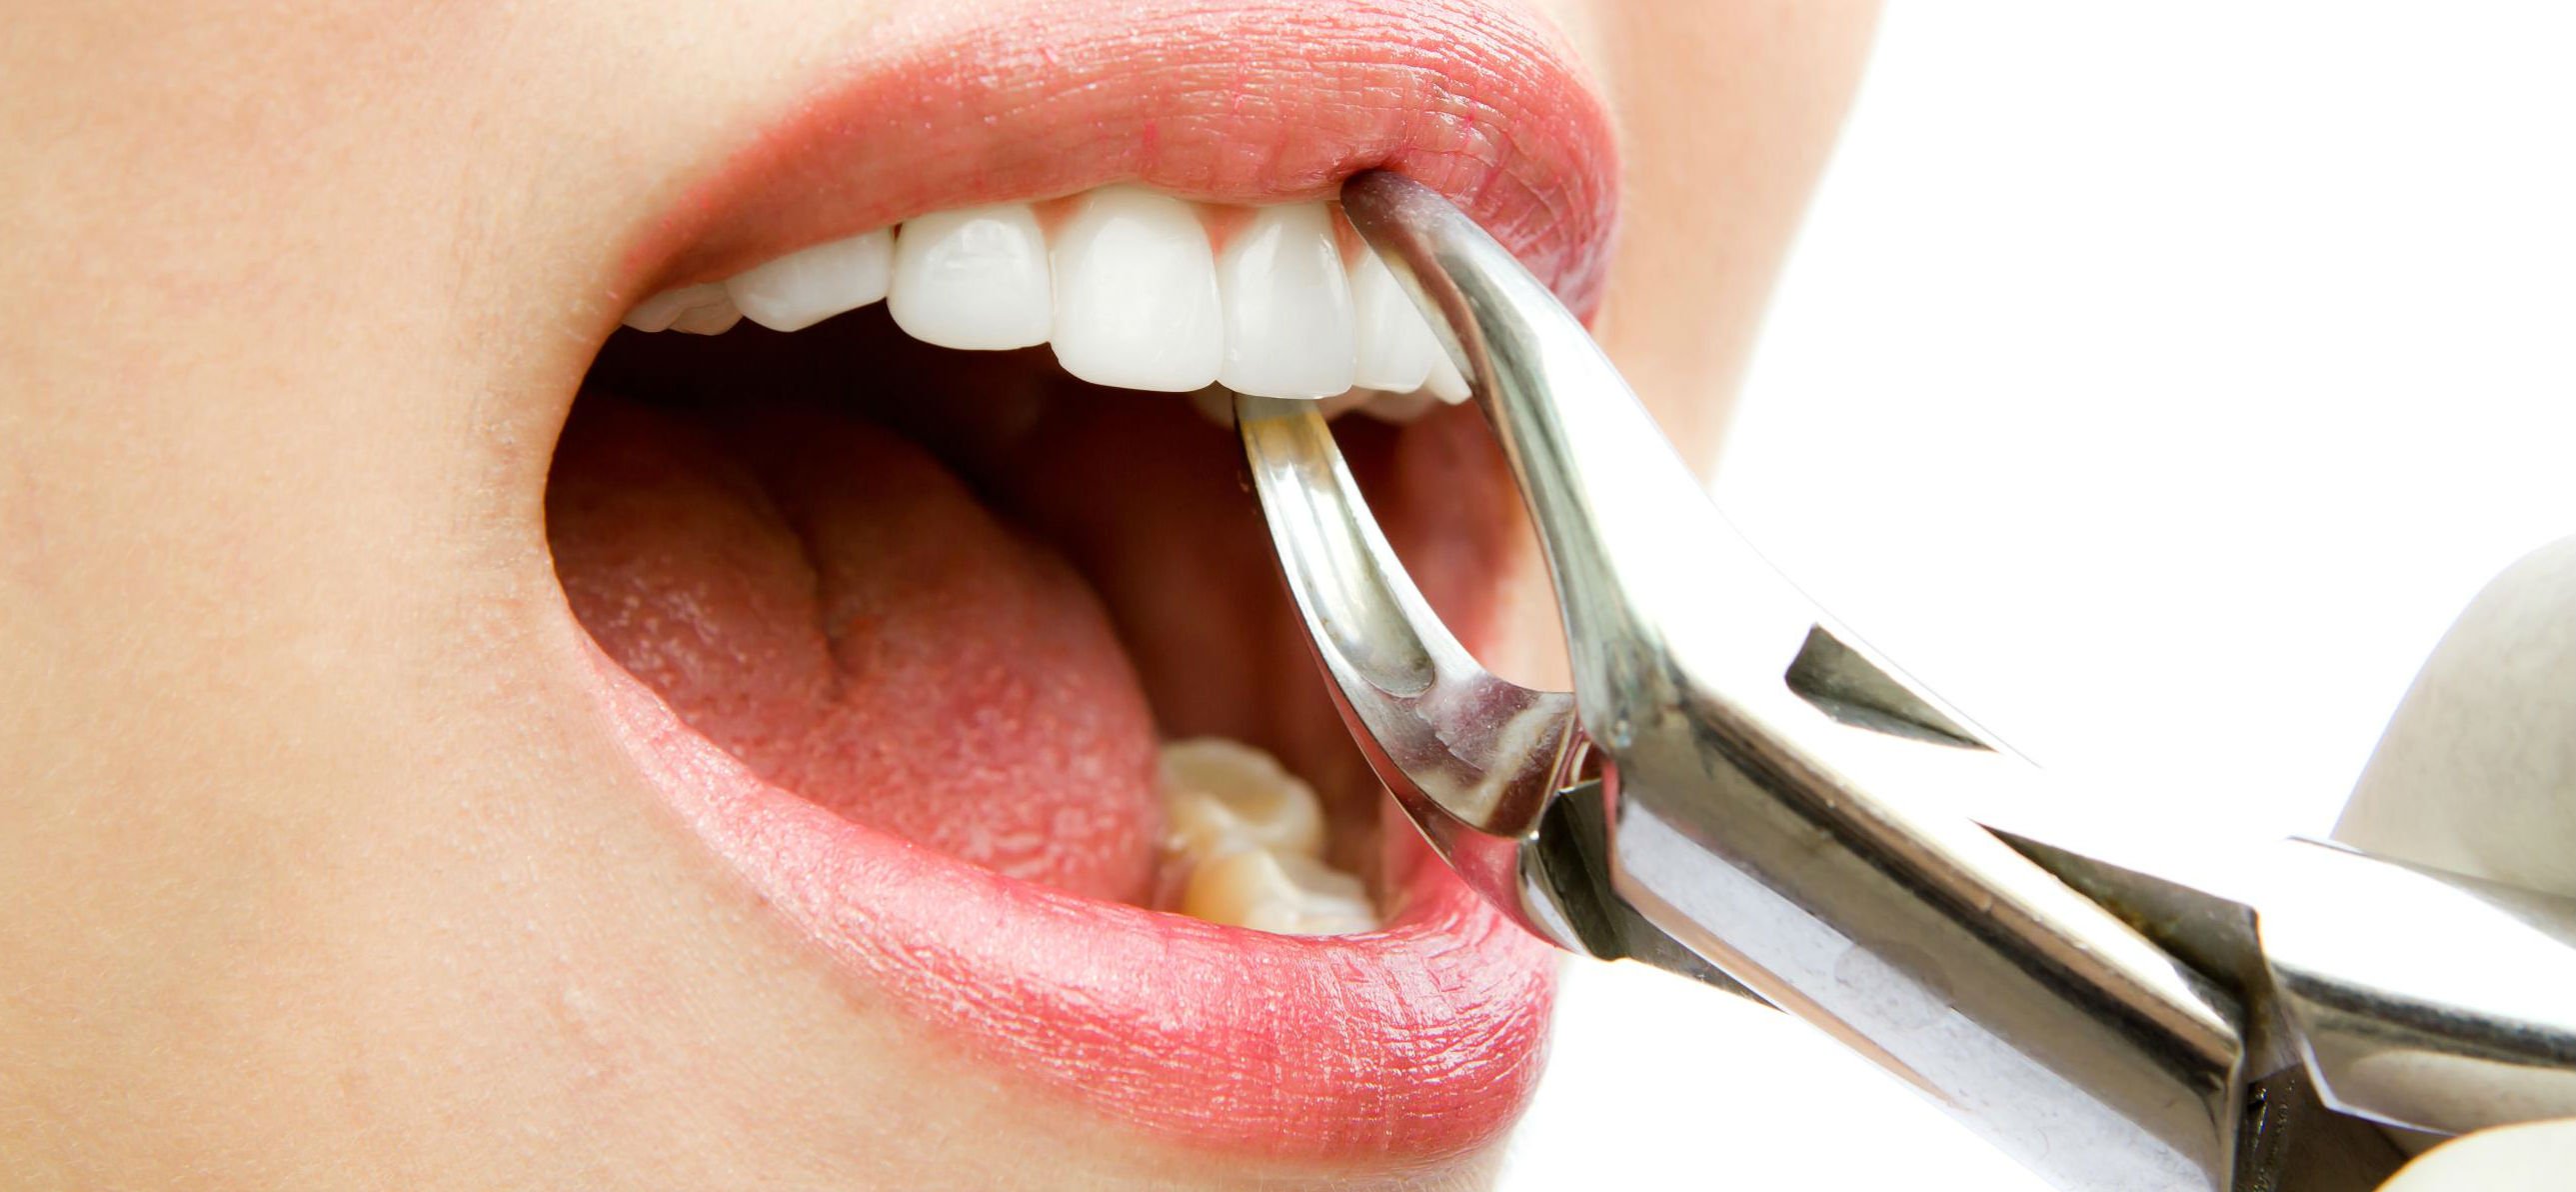 Що робити після видалення зуба: рекомендації по догляду за порожниною рота